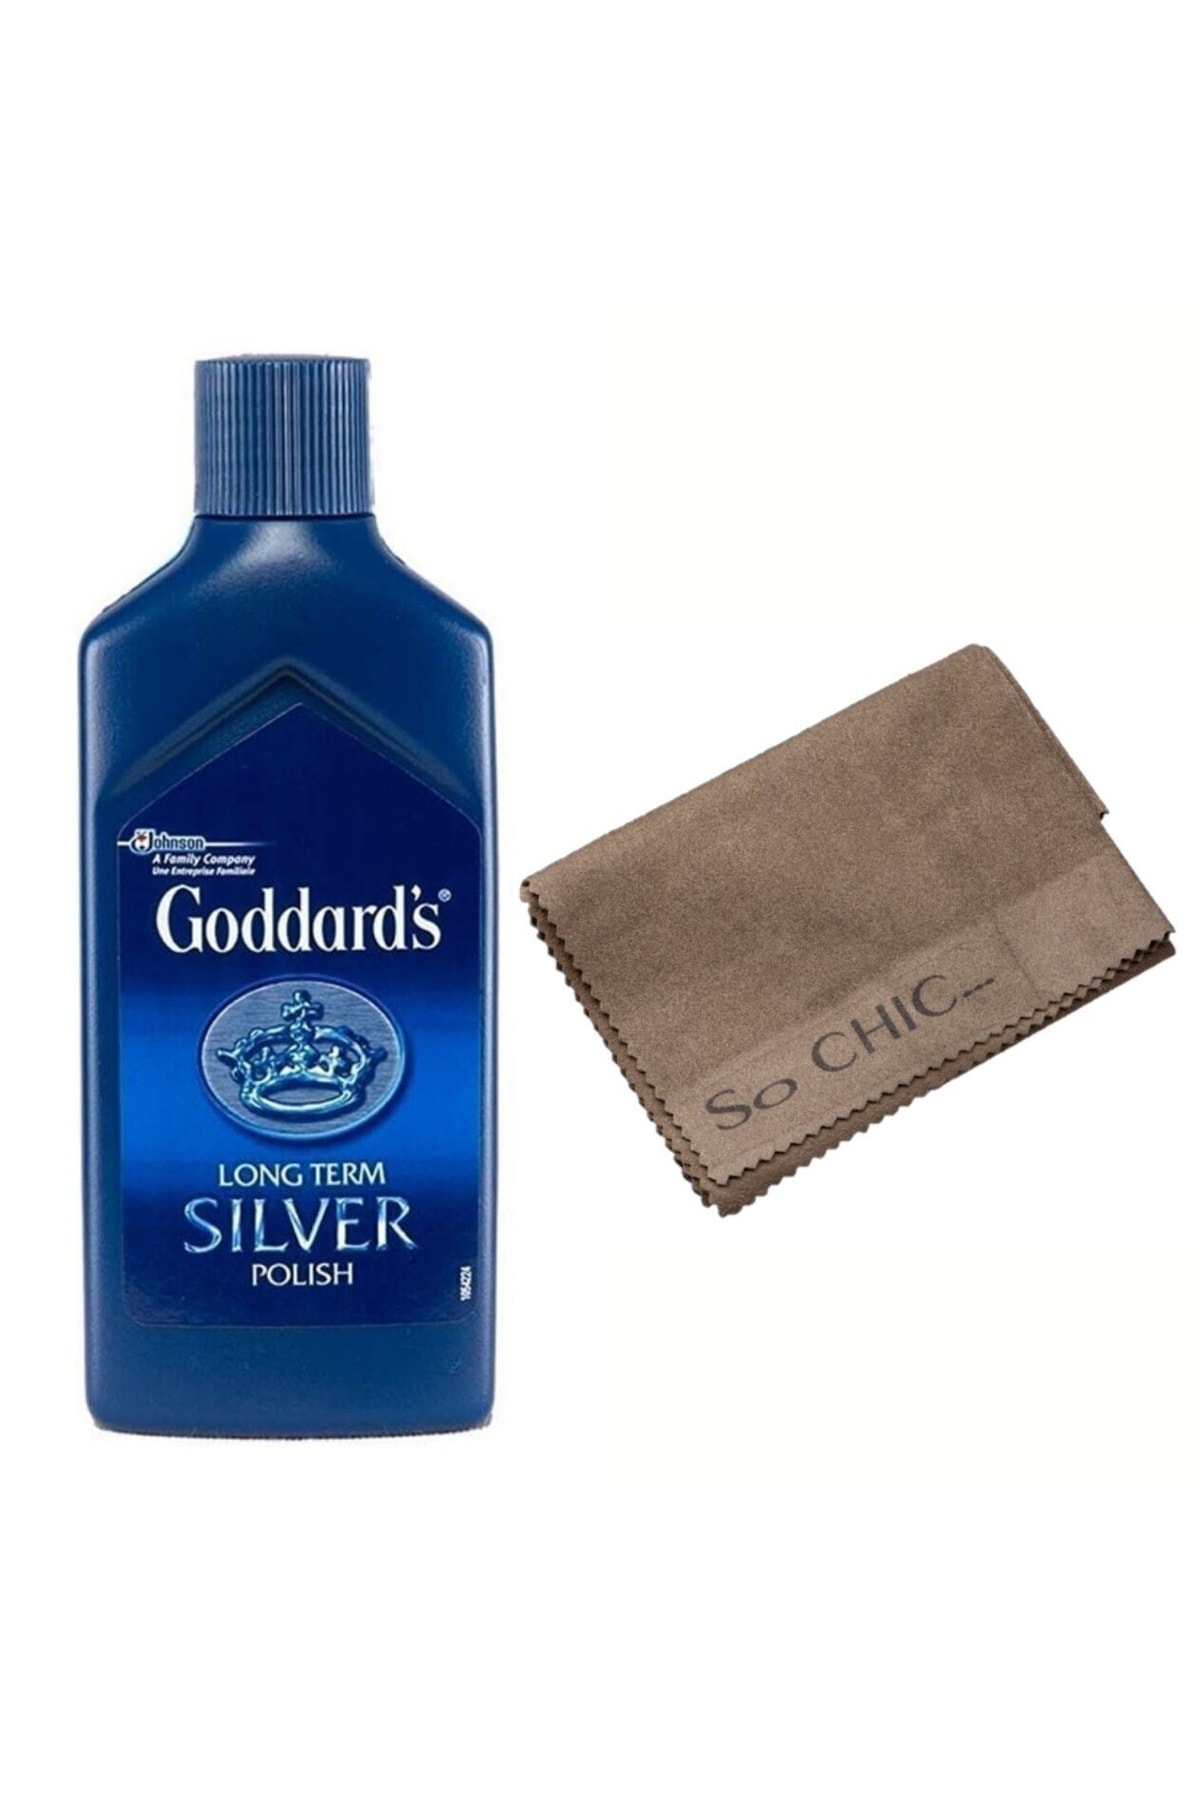 GODDARD'S Gümüş Temizleme Ve Parlatma Cilası 125 Ml + So Chic Gümüş Temizleme Mendili